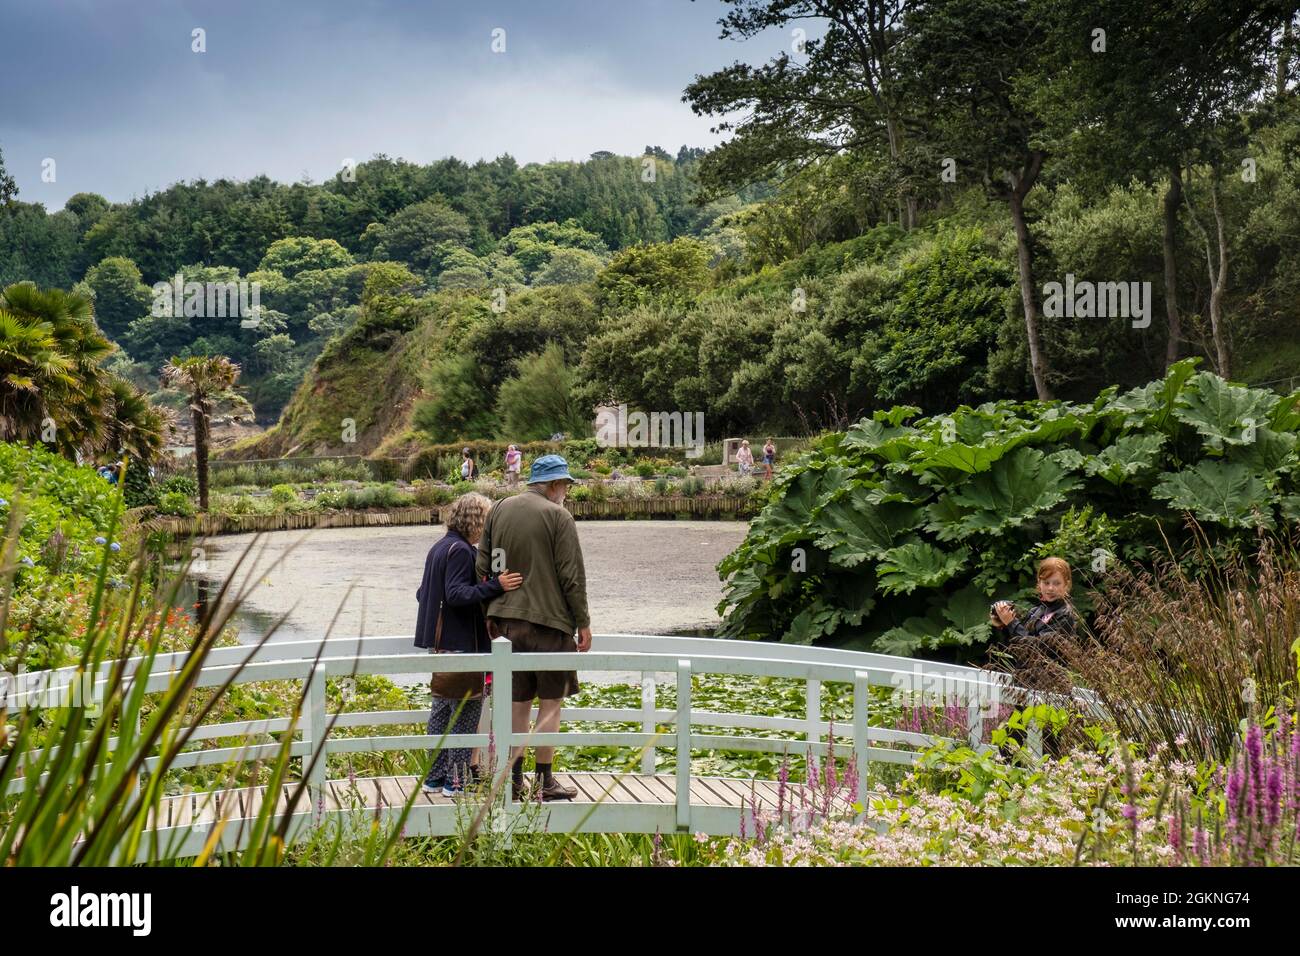 Les visiteurs se trouvant sur la passerelle ornementale au-dessus de l'étang Mallard, dans les jardins subtropicaux luxuriants de Trebah Gardens, dans les Cornouailles. Banque D'Images